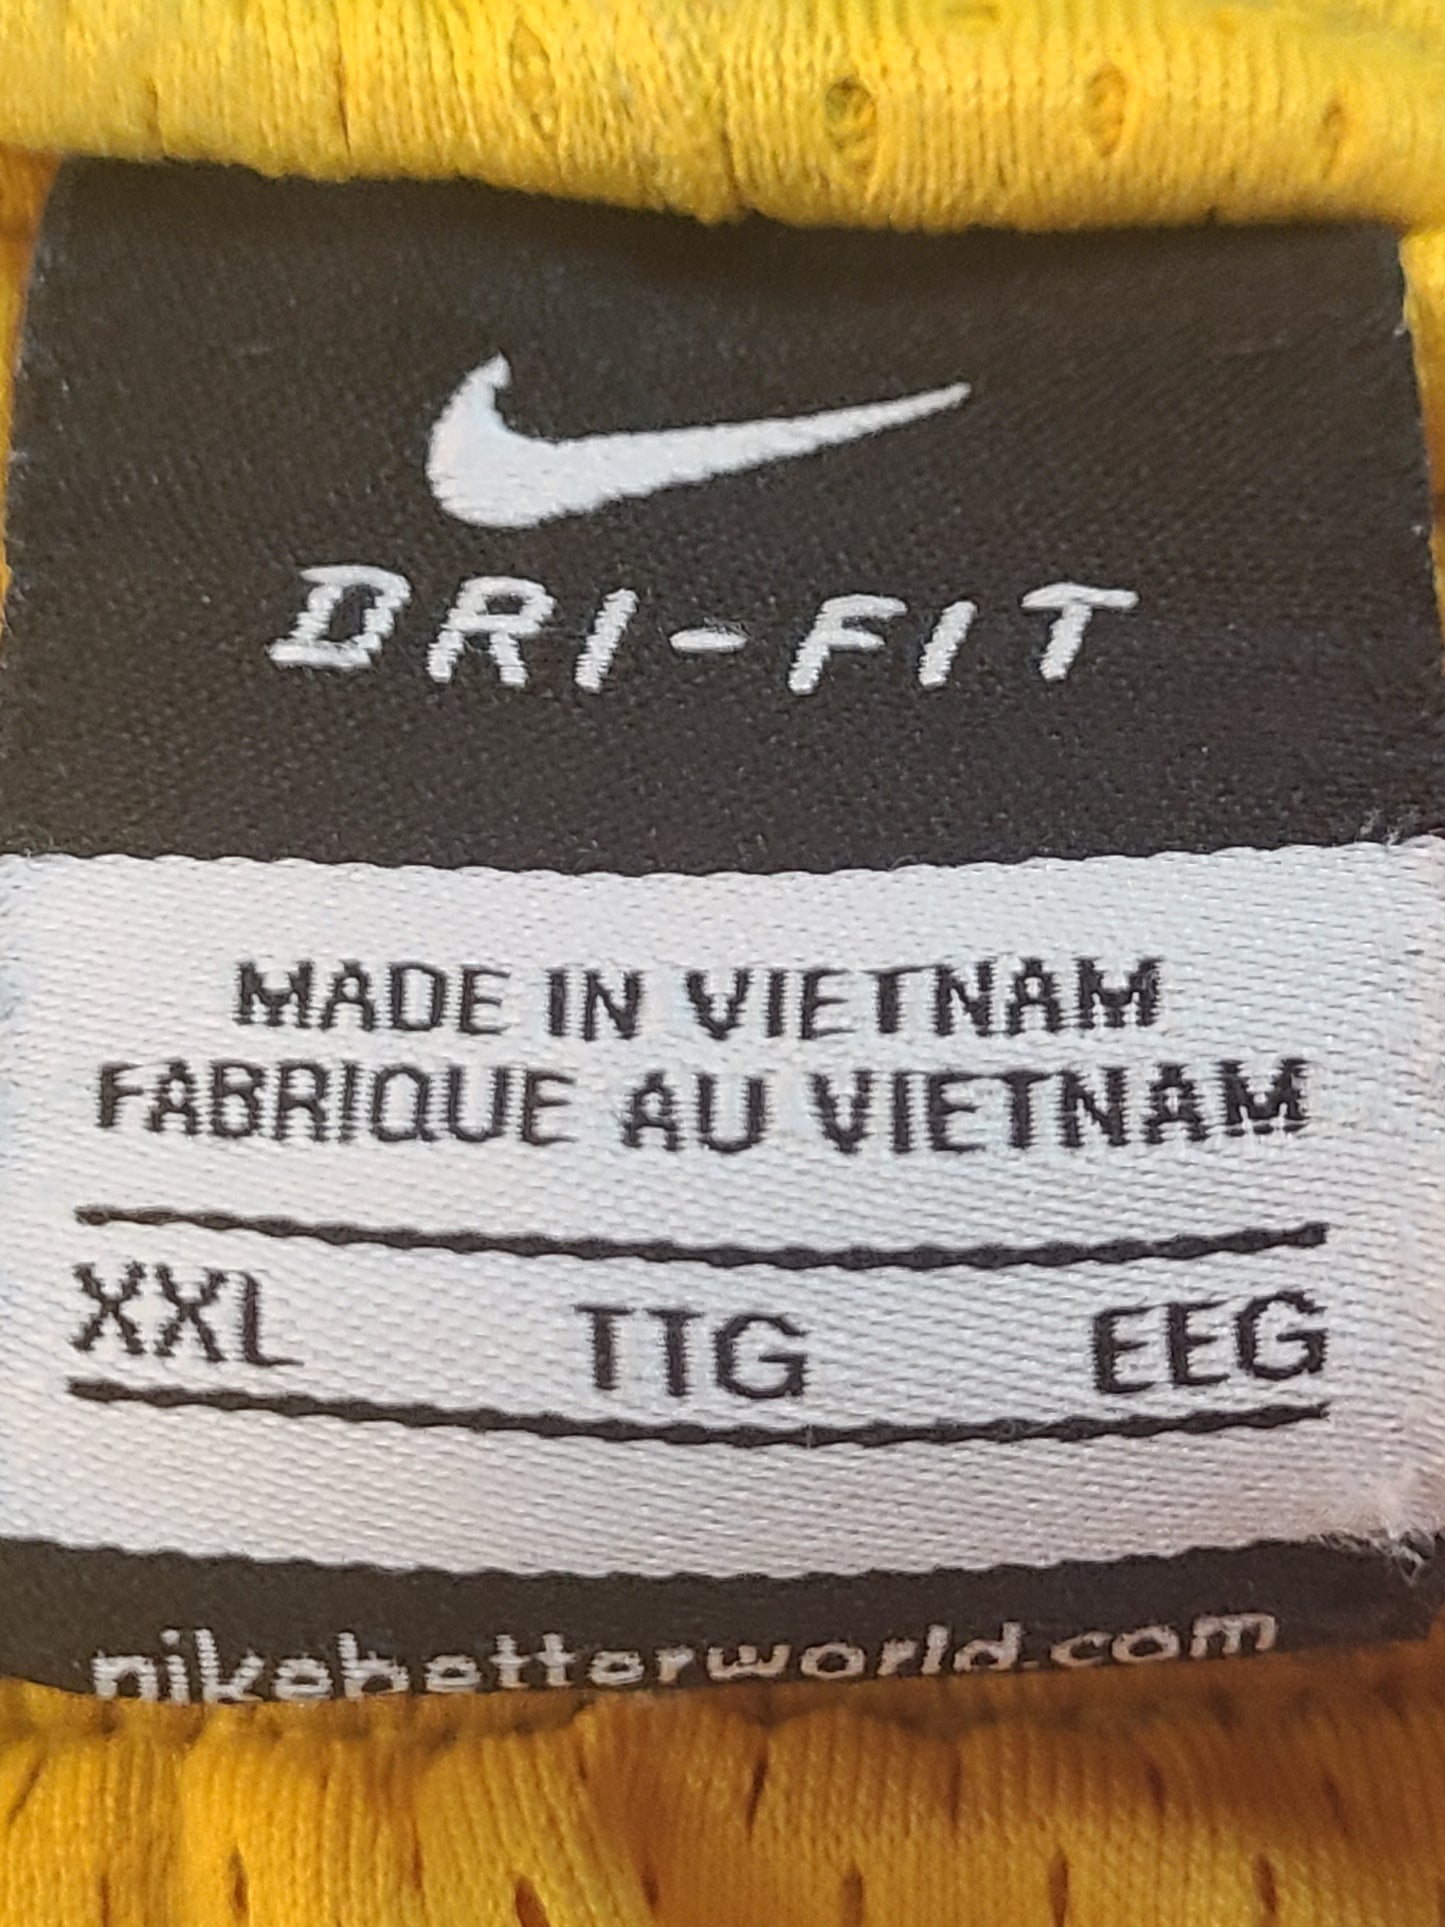 Vintage Nike Dri-Fit Men's Basketball Shorts Yellow - Size XXL